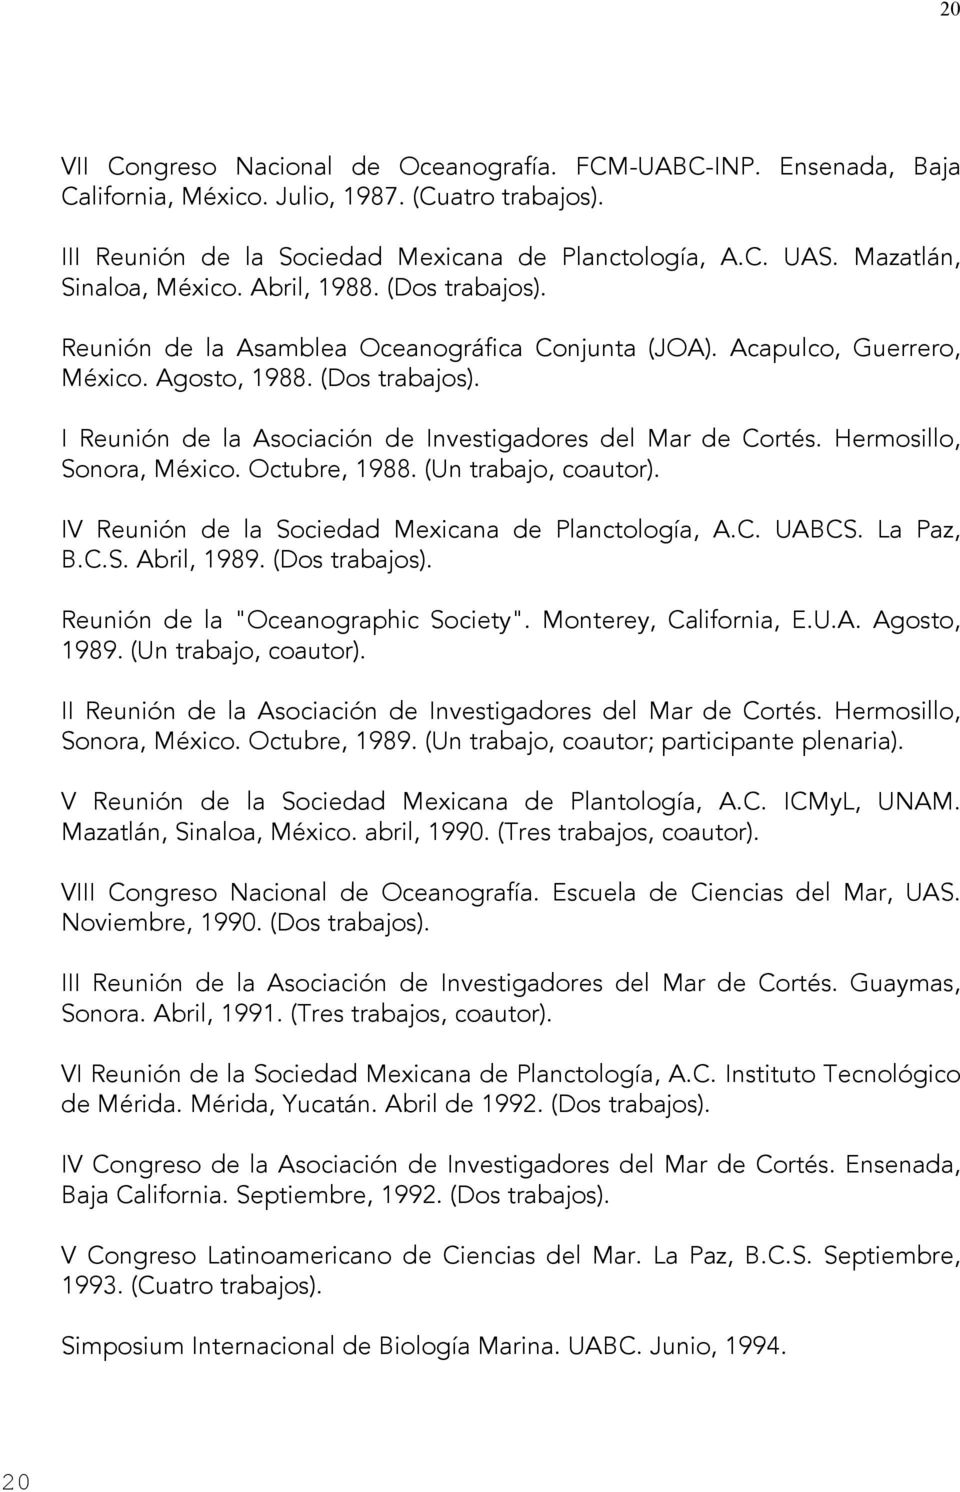 Hermosillo, Sonora, México. Octubre, 1988. (Un trabajo, coautor). IV Reunión de la Sociedad Mexicana de Planctología, A.C. UABCS. La Paz, B.C.S. Abril, 1989. (Dos trabajos).